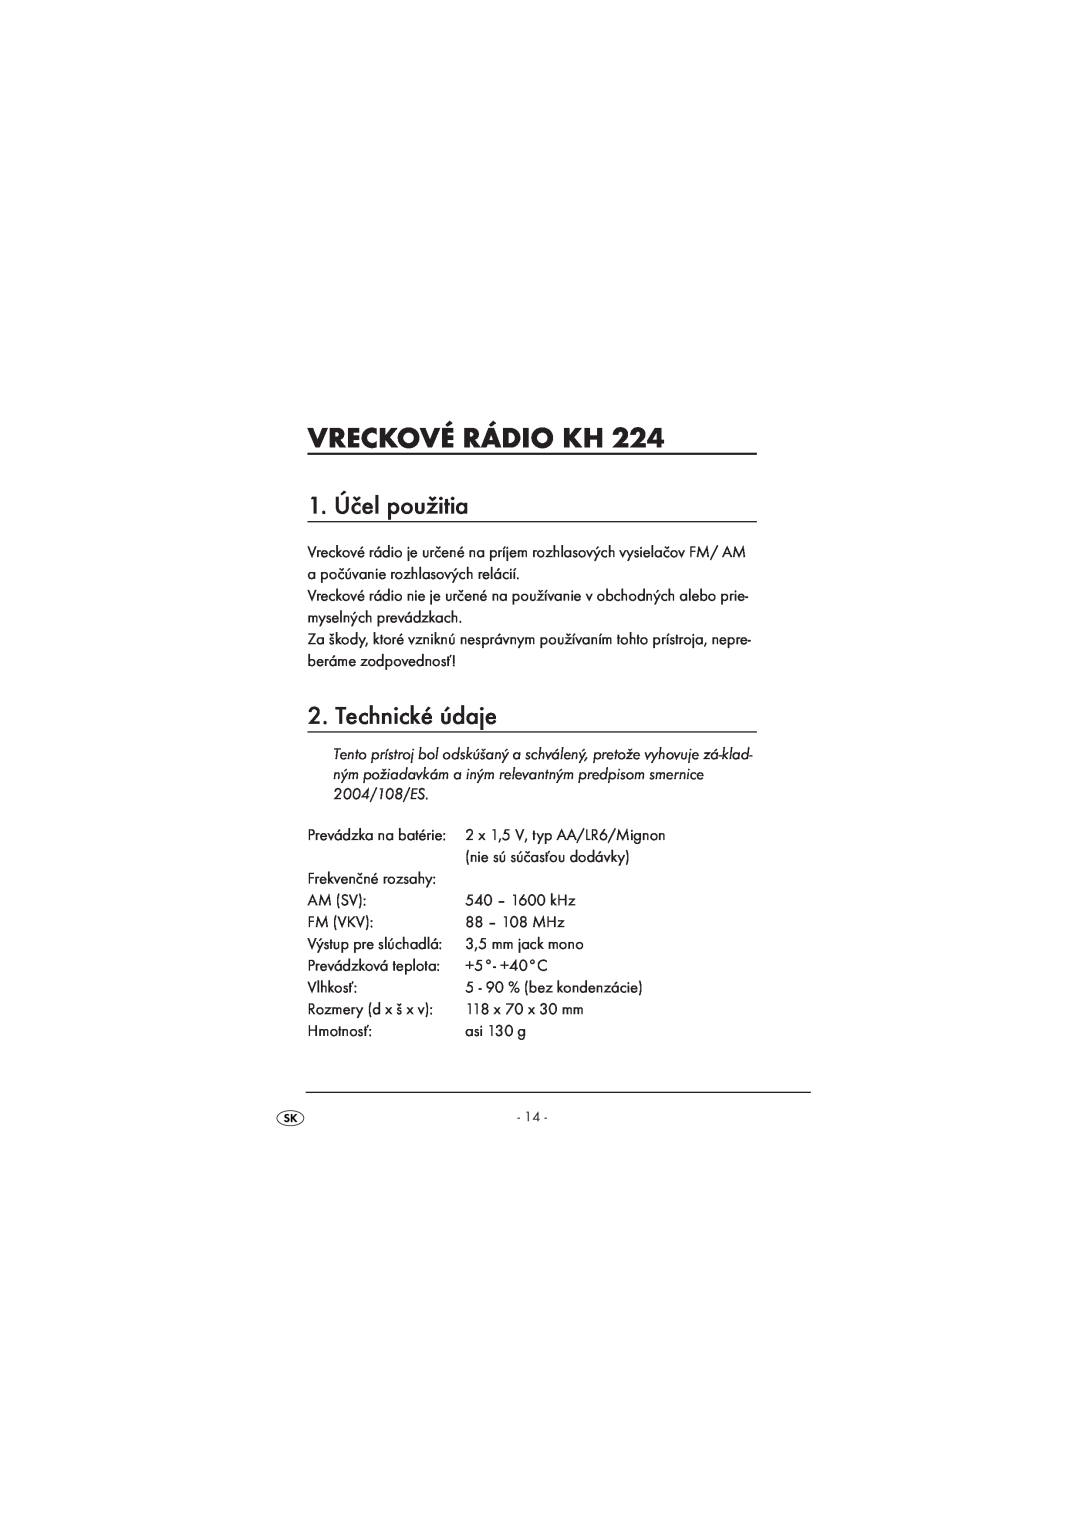 Kompernass KH224-1/08-V2 manual Vreckové Rádio Kh, 1. Účel použitia, Technické údaje 